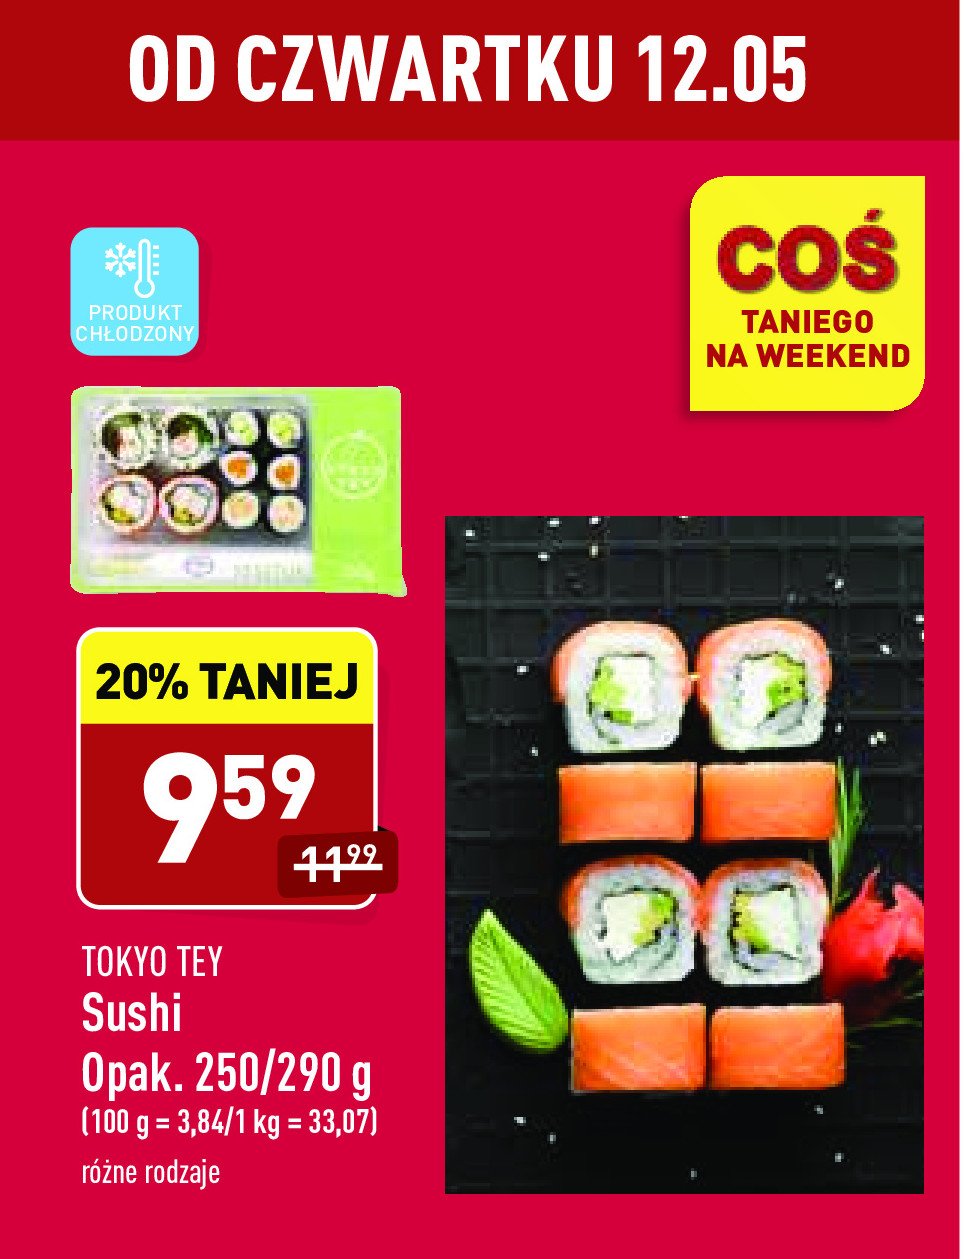 Sushi#02 Tokyo tey promocja